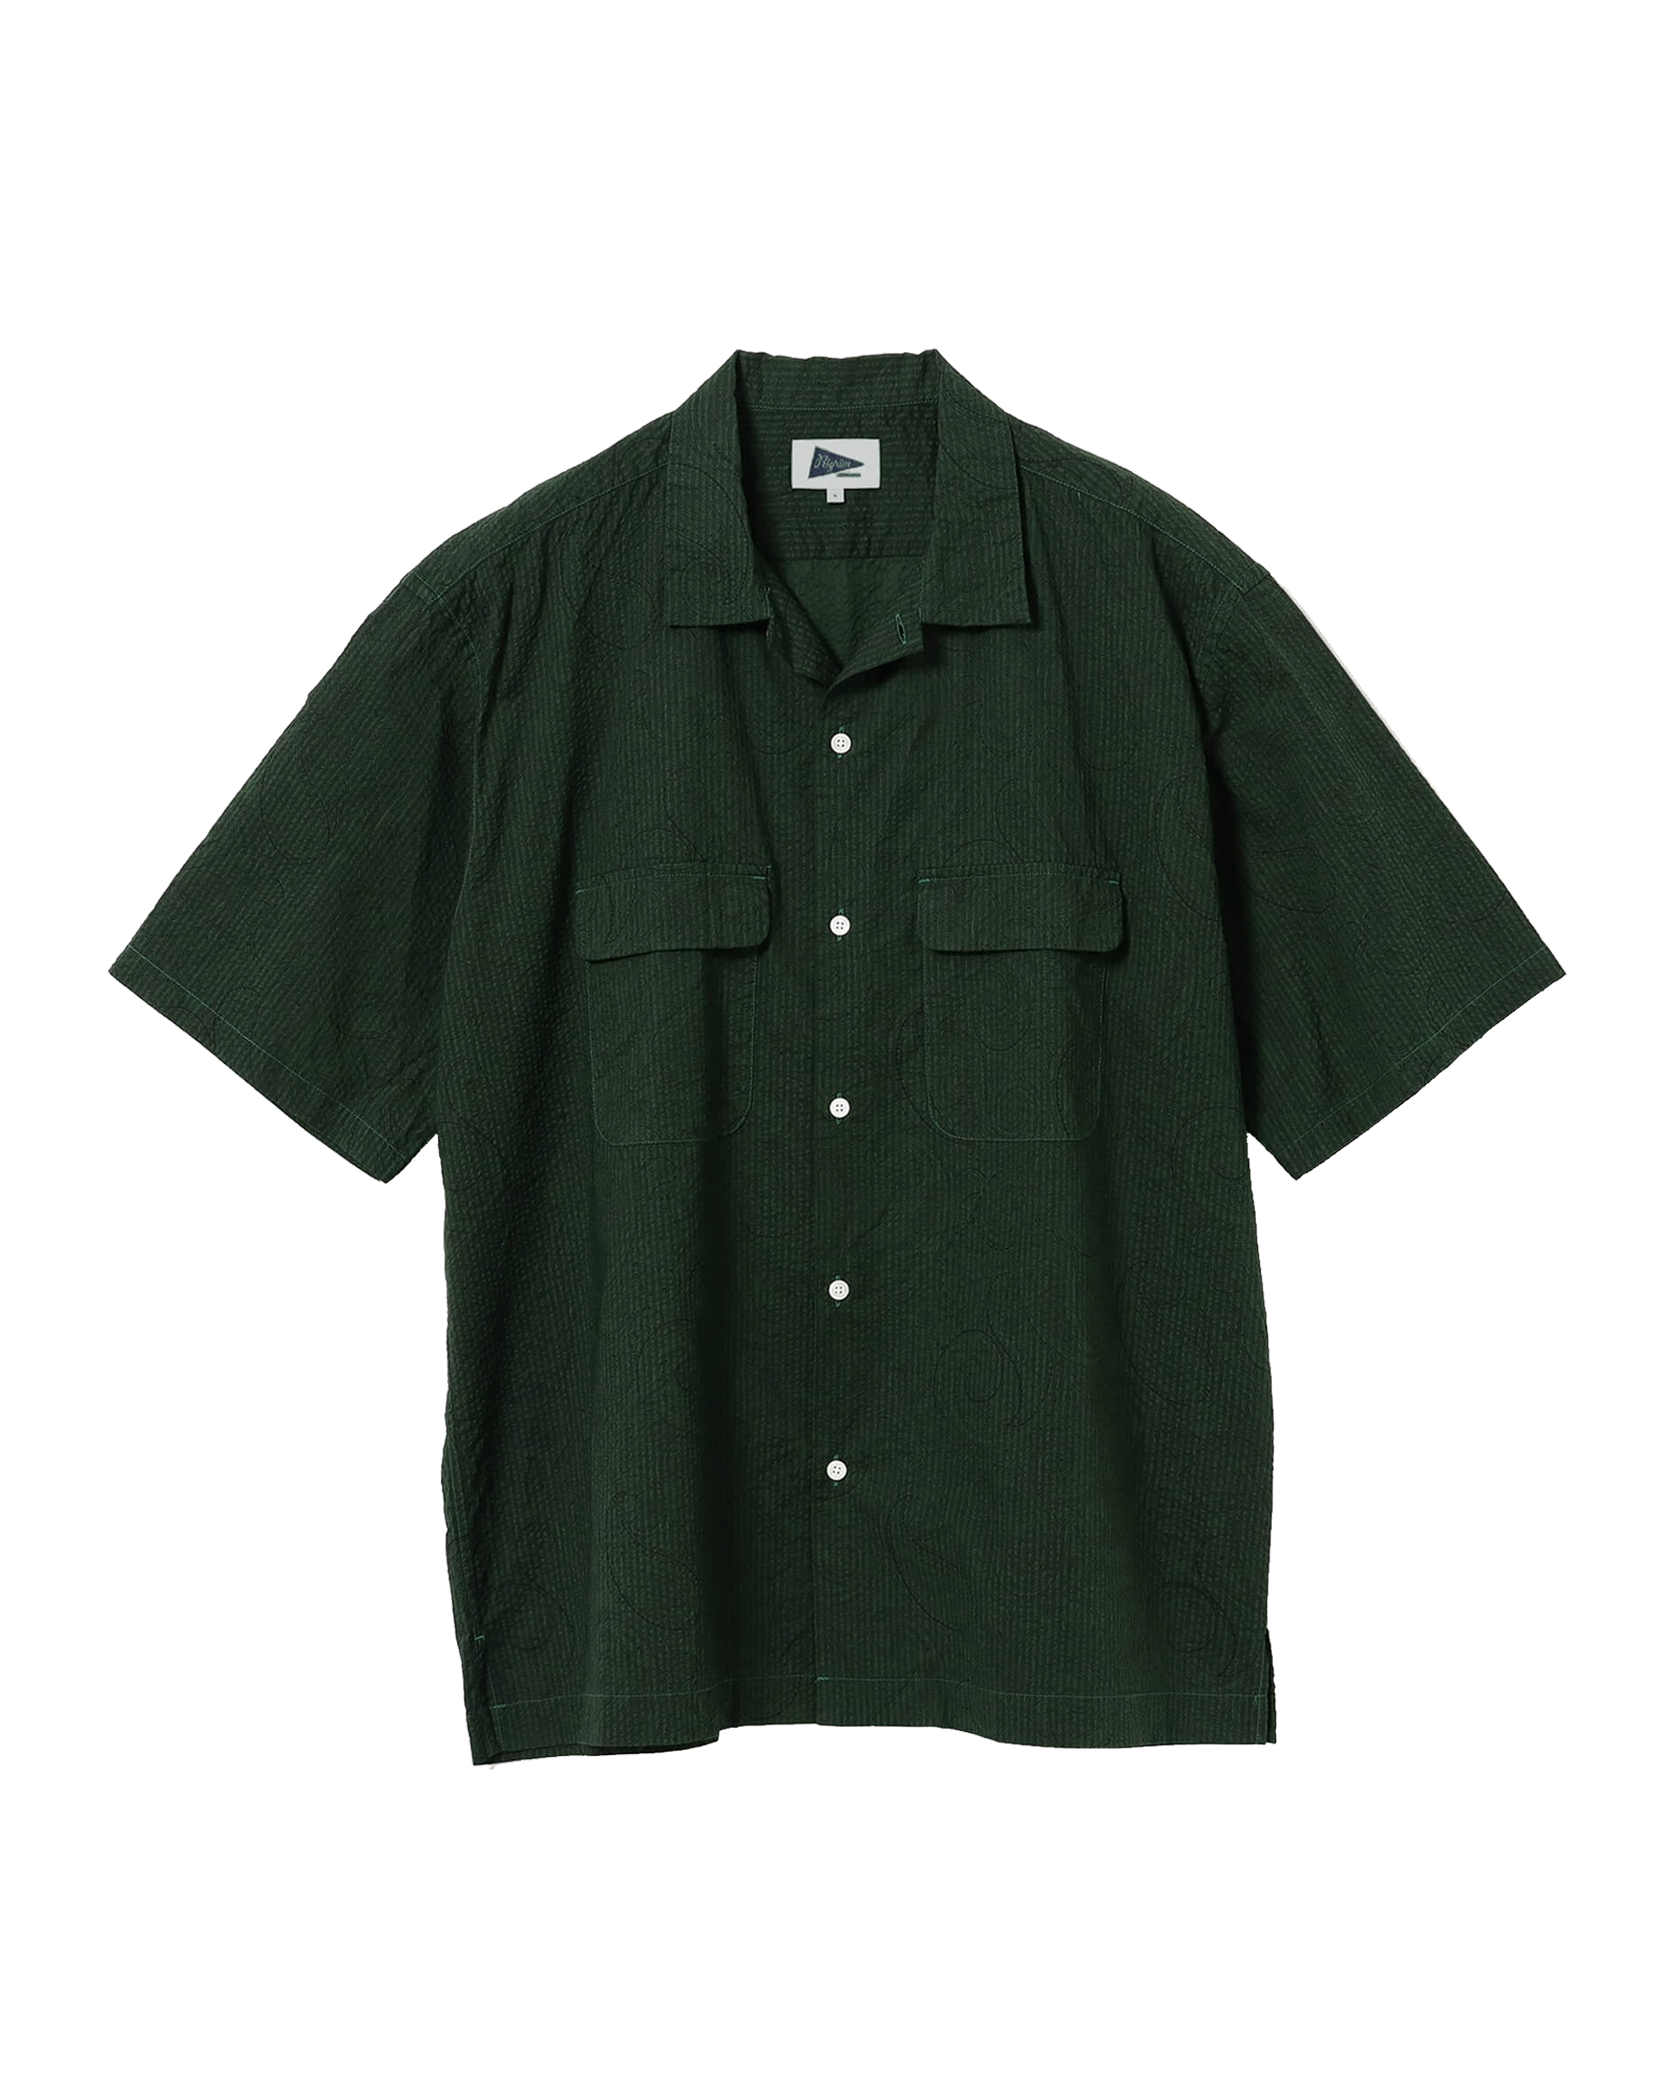 Pilgrim Surf + Supply - Shirt - Sam Paisley - Short Sleeve Shirt - Green